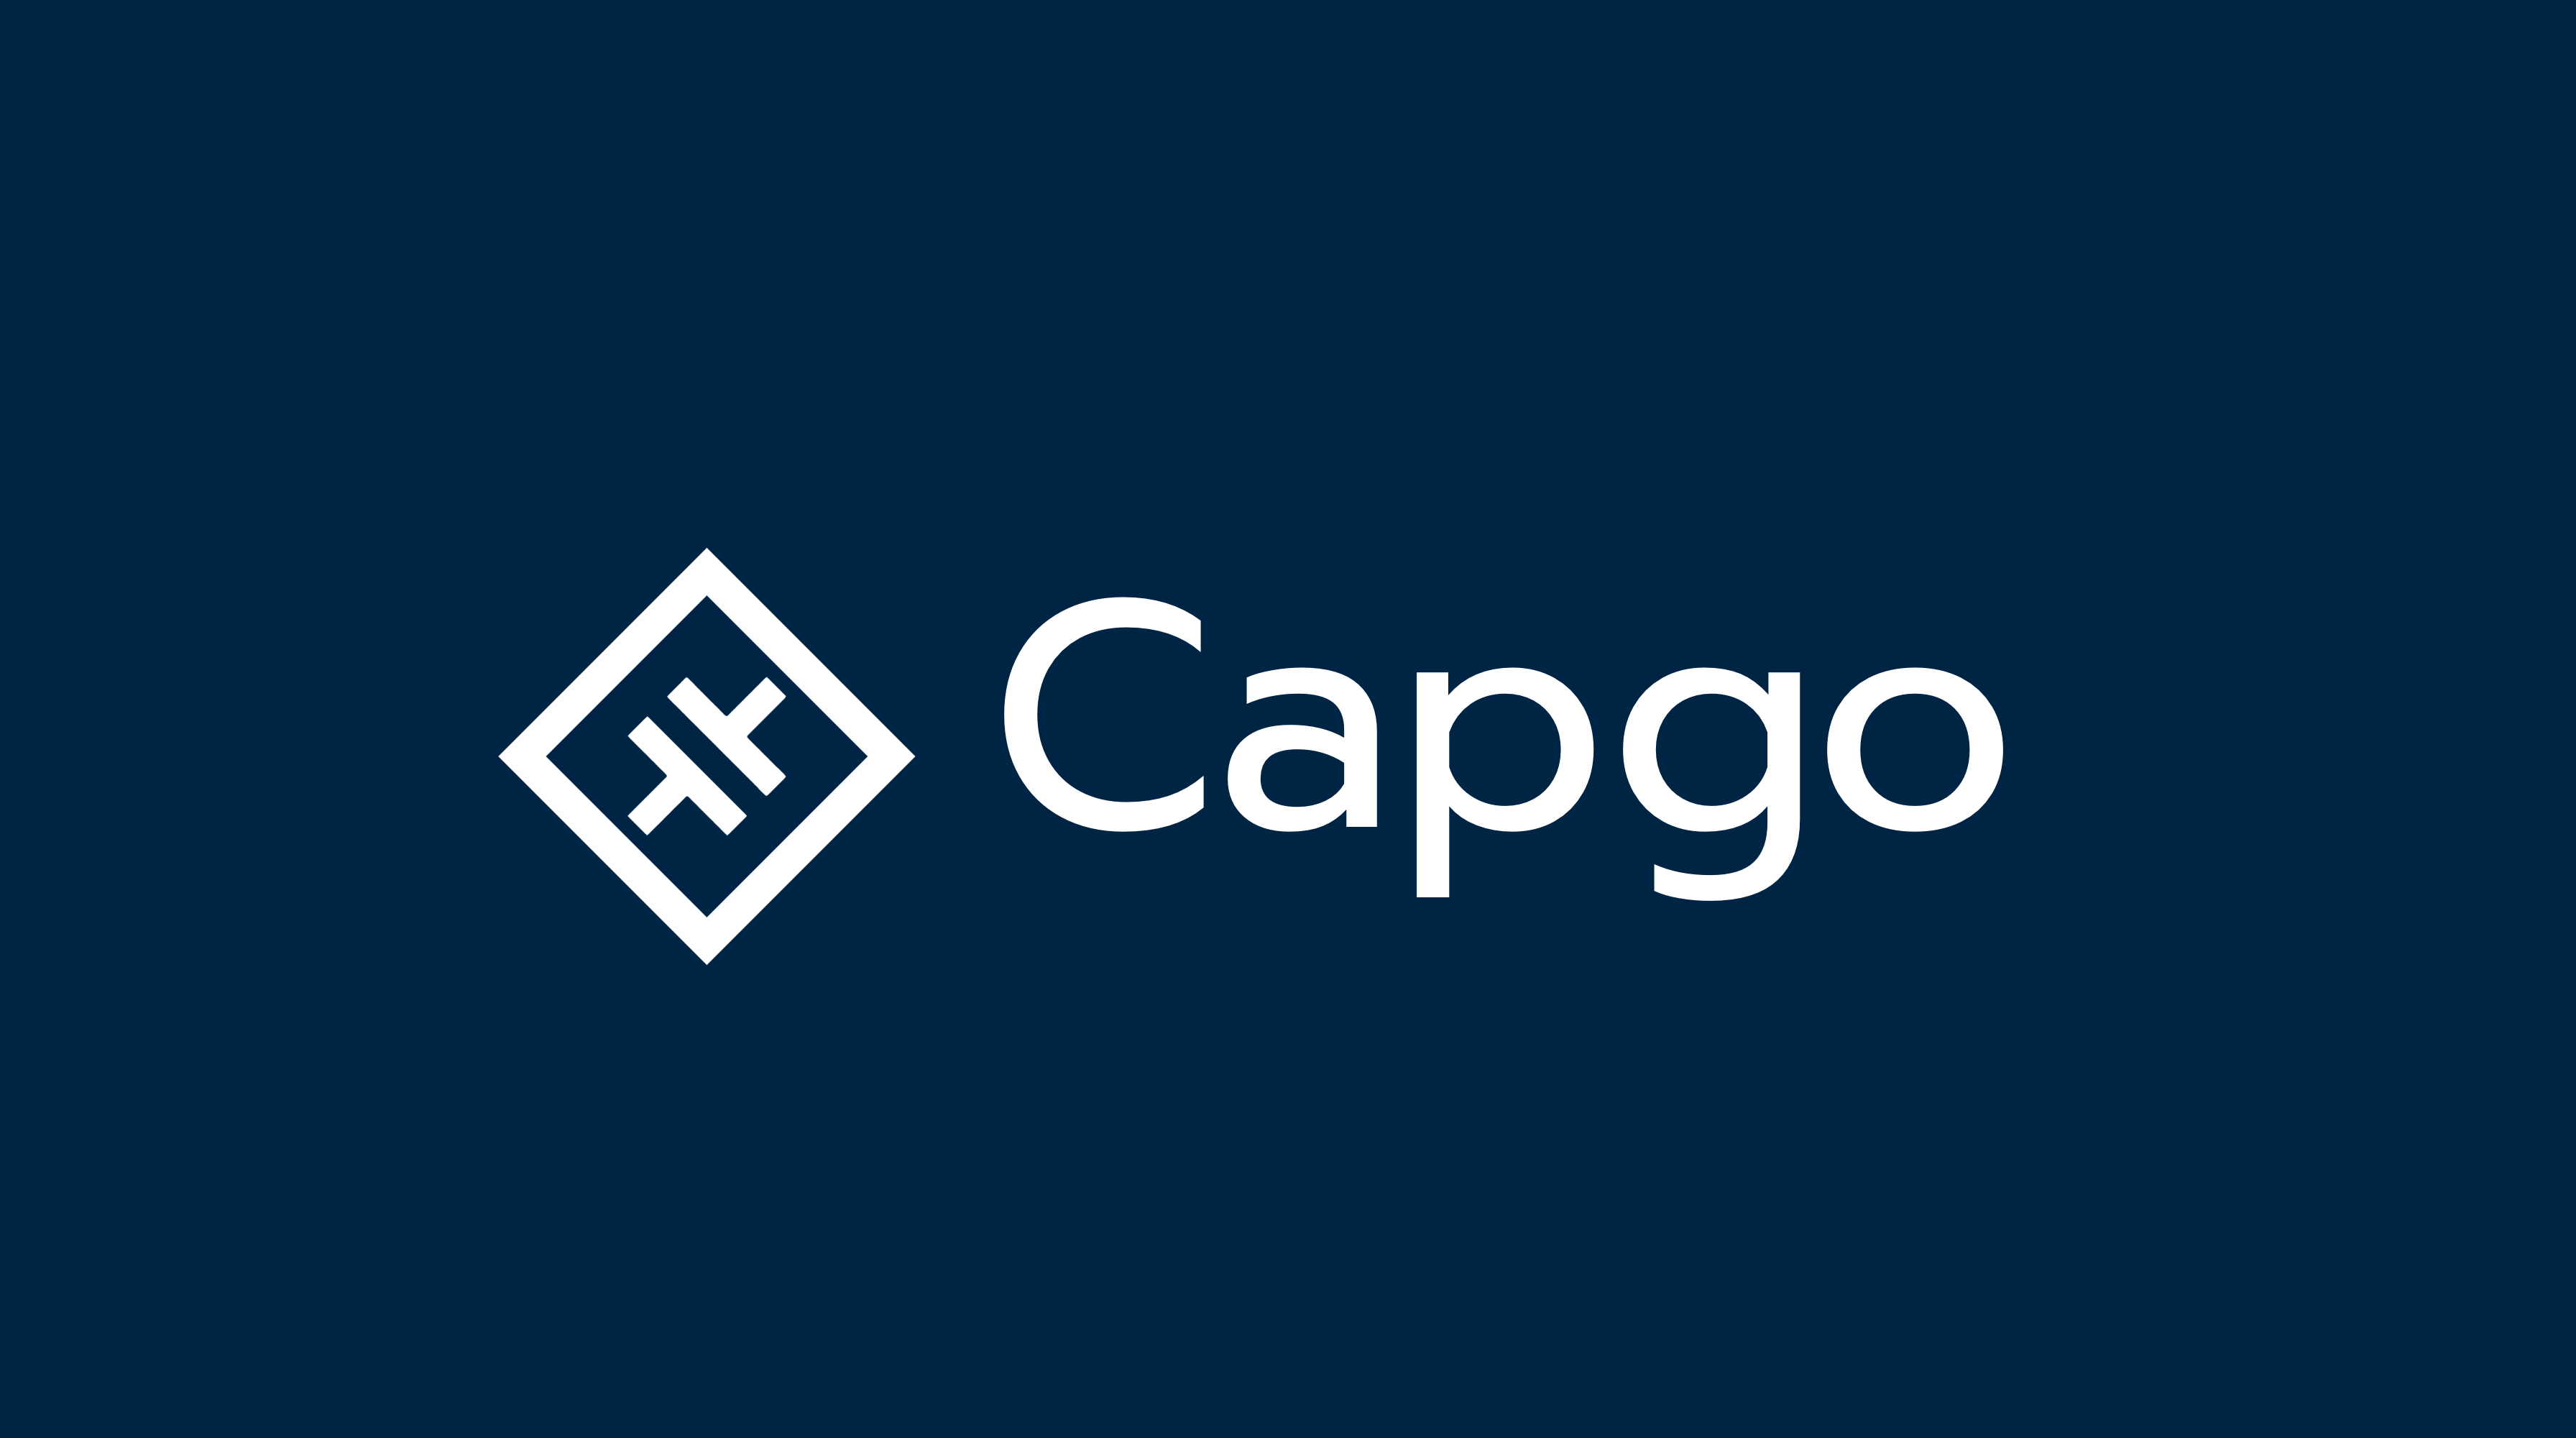 Capgo - Instant updates for capacitor